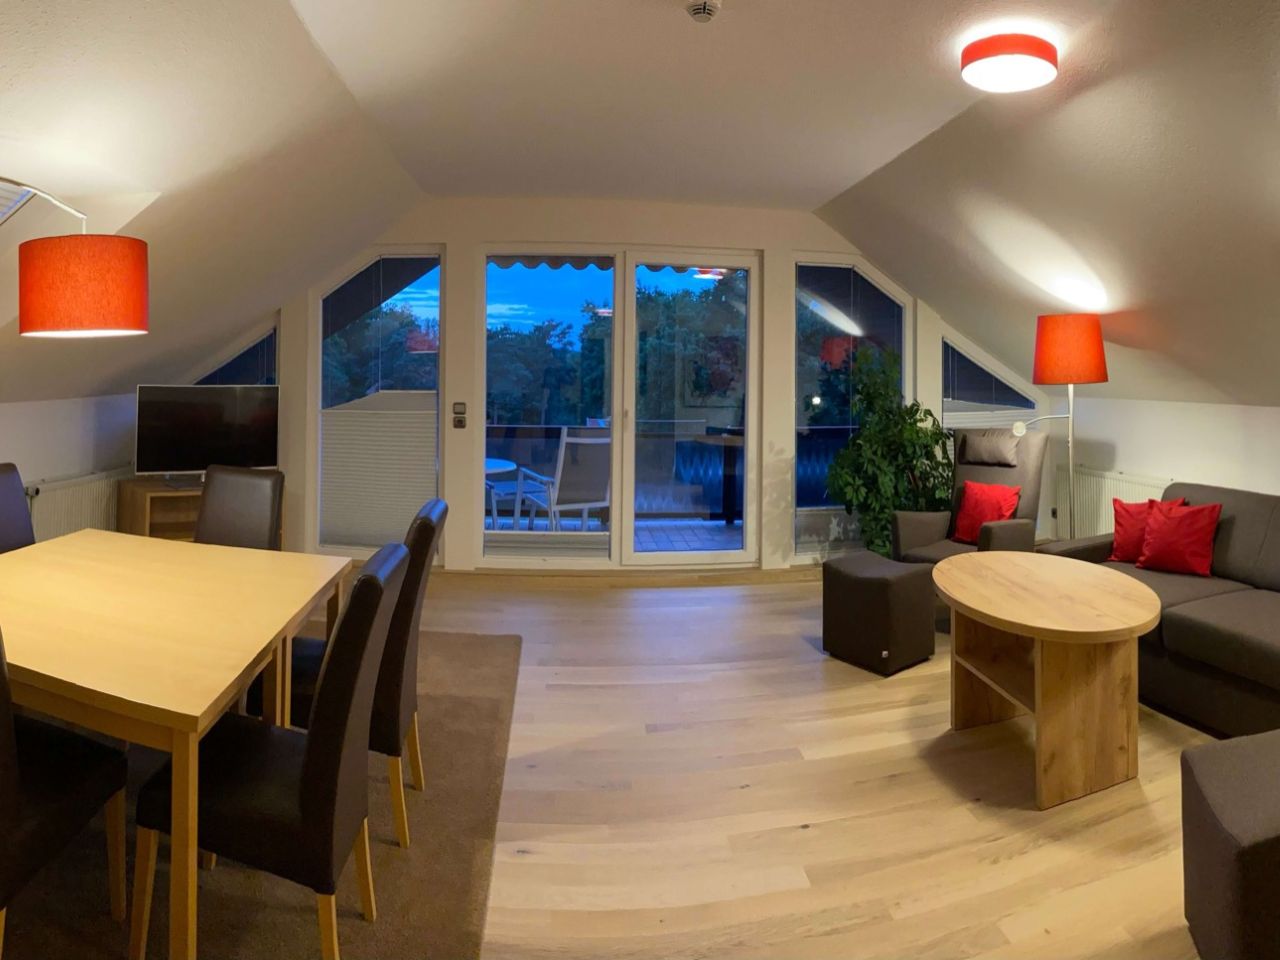 Große Suite mit großen Balkonfenstern, Tisch, Sofa und Stehlampfen in einem modern eingerichten Zimmer